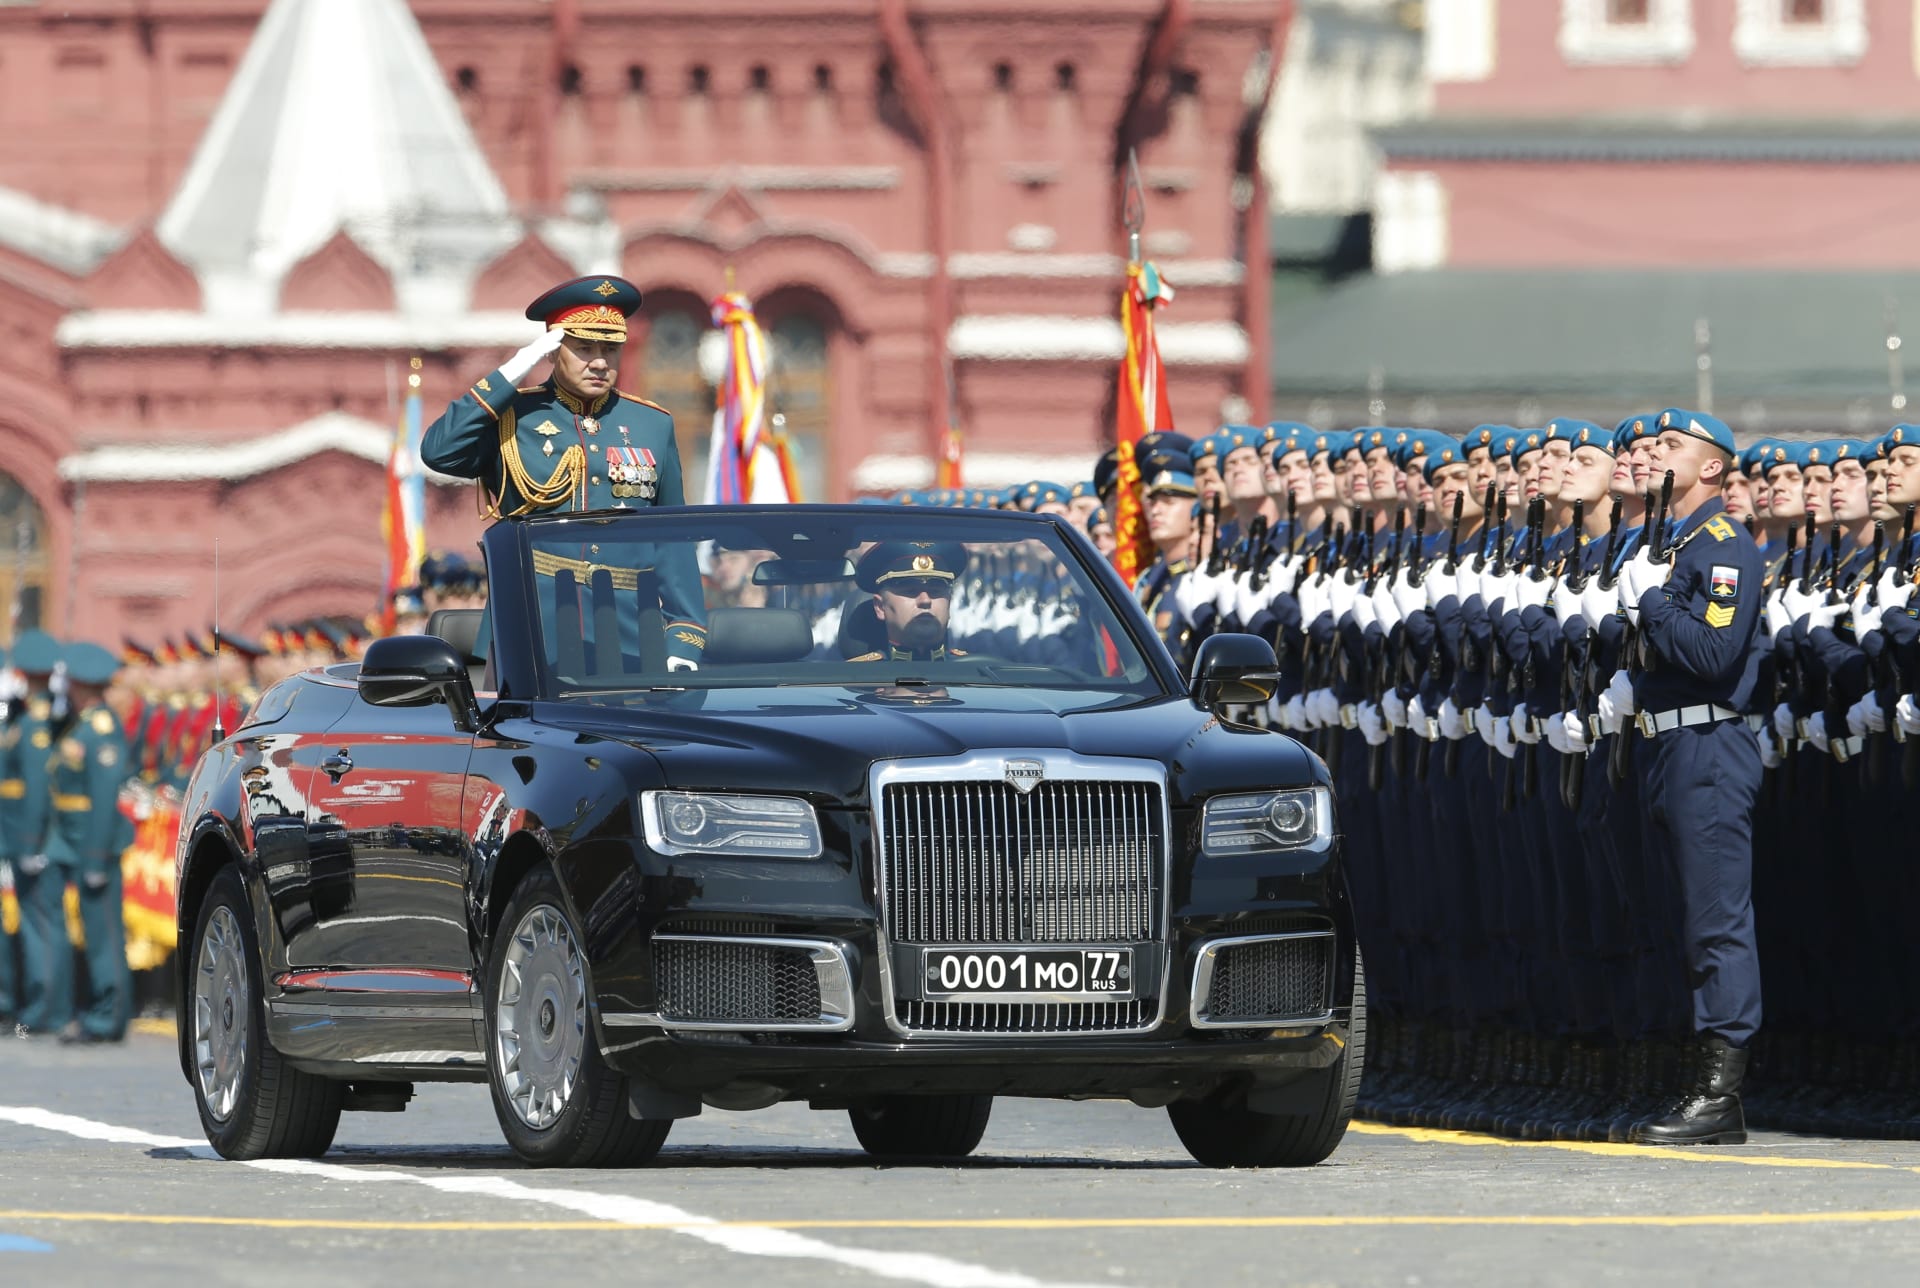 Ruský prezident Vladimir Putin se svým ministrem obrany Sergejem Šojguem